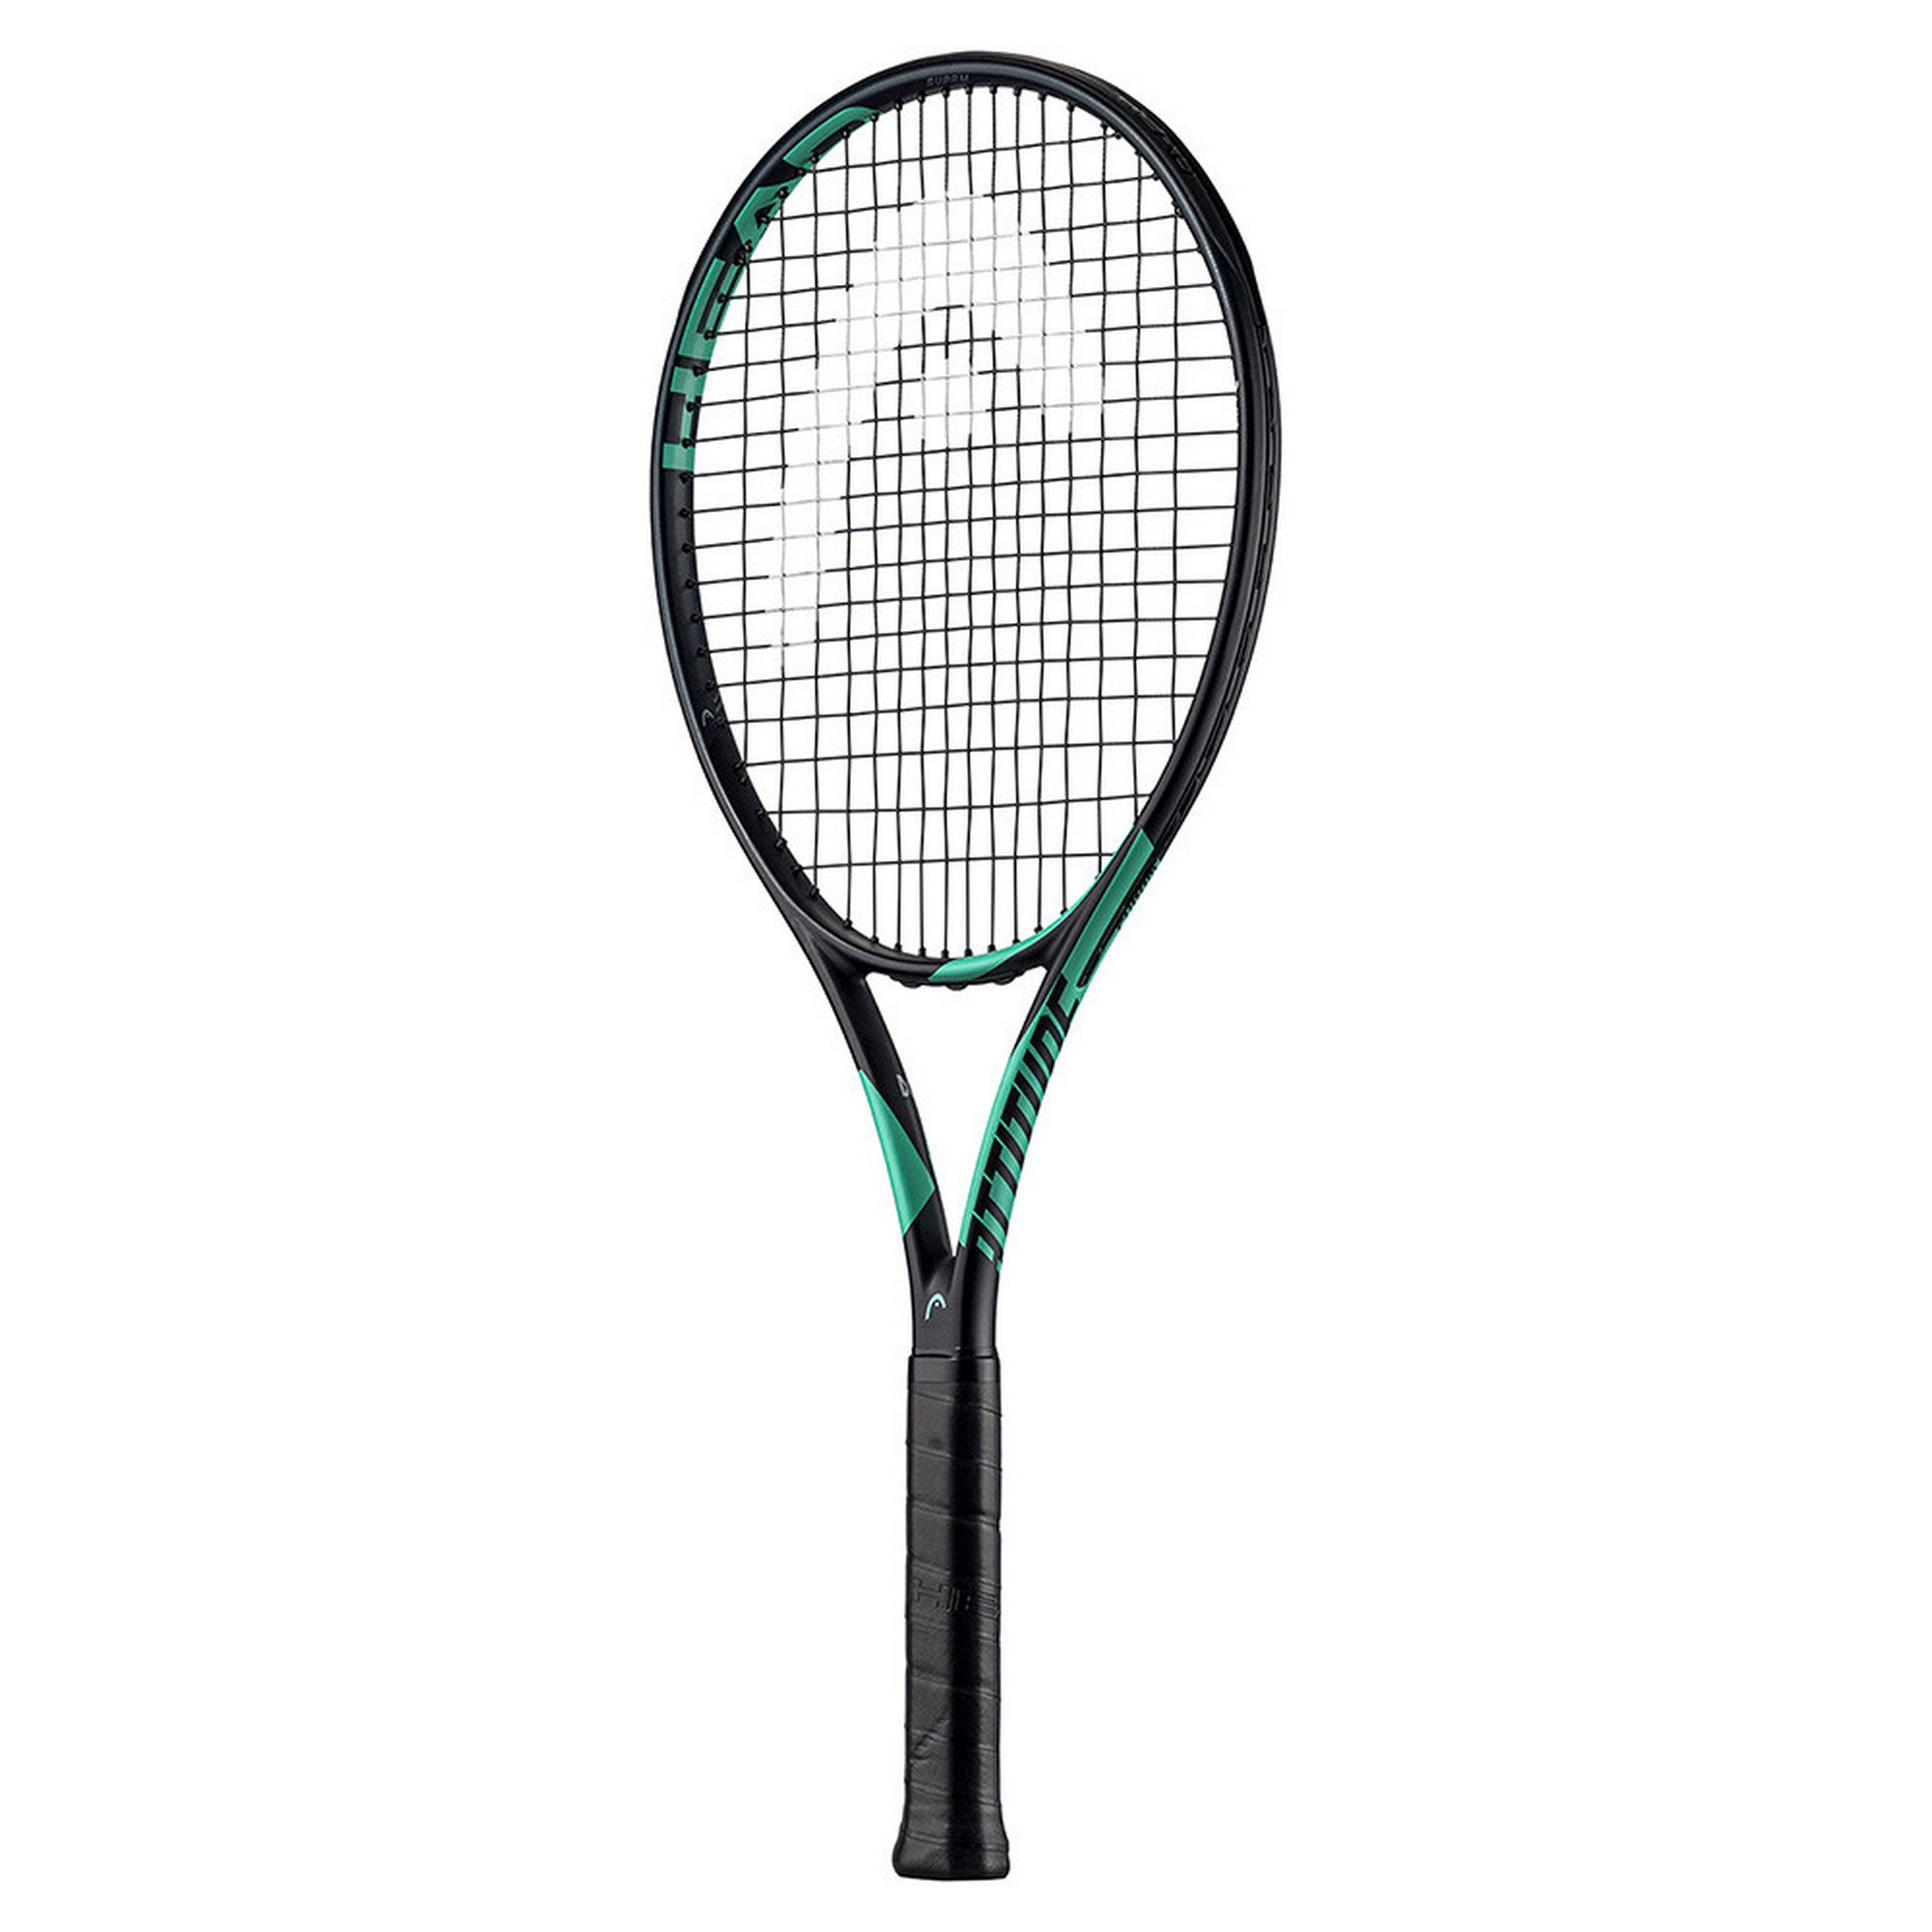 Купить Ракетка для большого тенниса Head MX Attitude Suprm Gr4 234703 черно-зеленый,